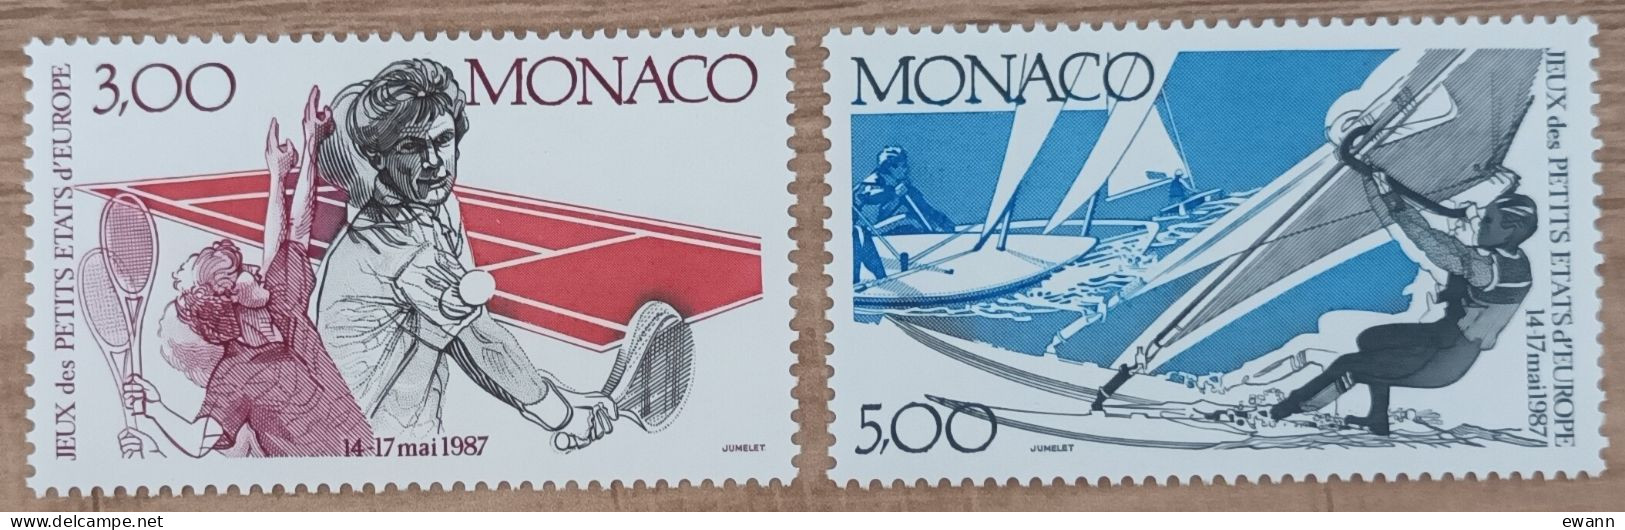 Monaco - YT N°1579, 1580 - 2es Jeux Des Petits Etats D'Europe - 1987 - Neuf - Nuovi